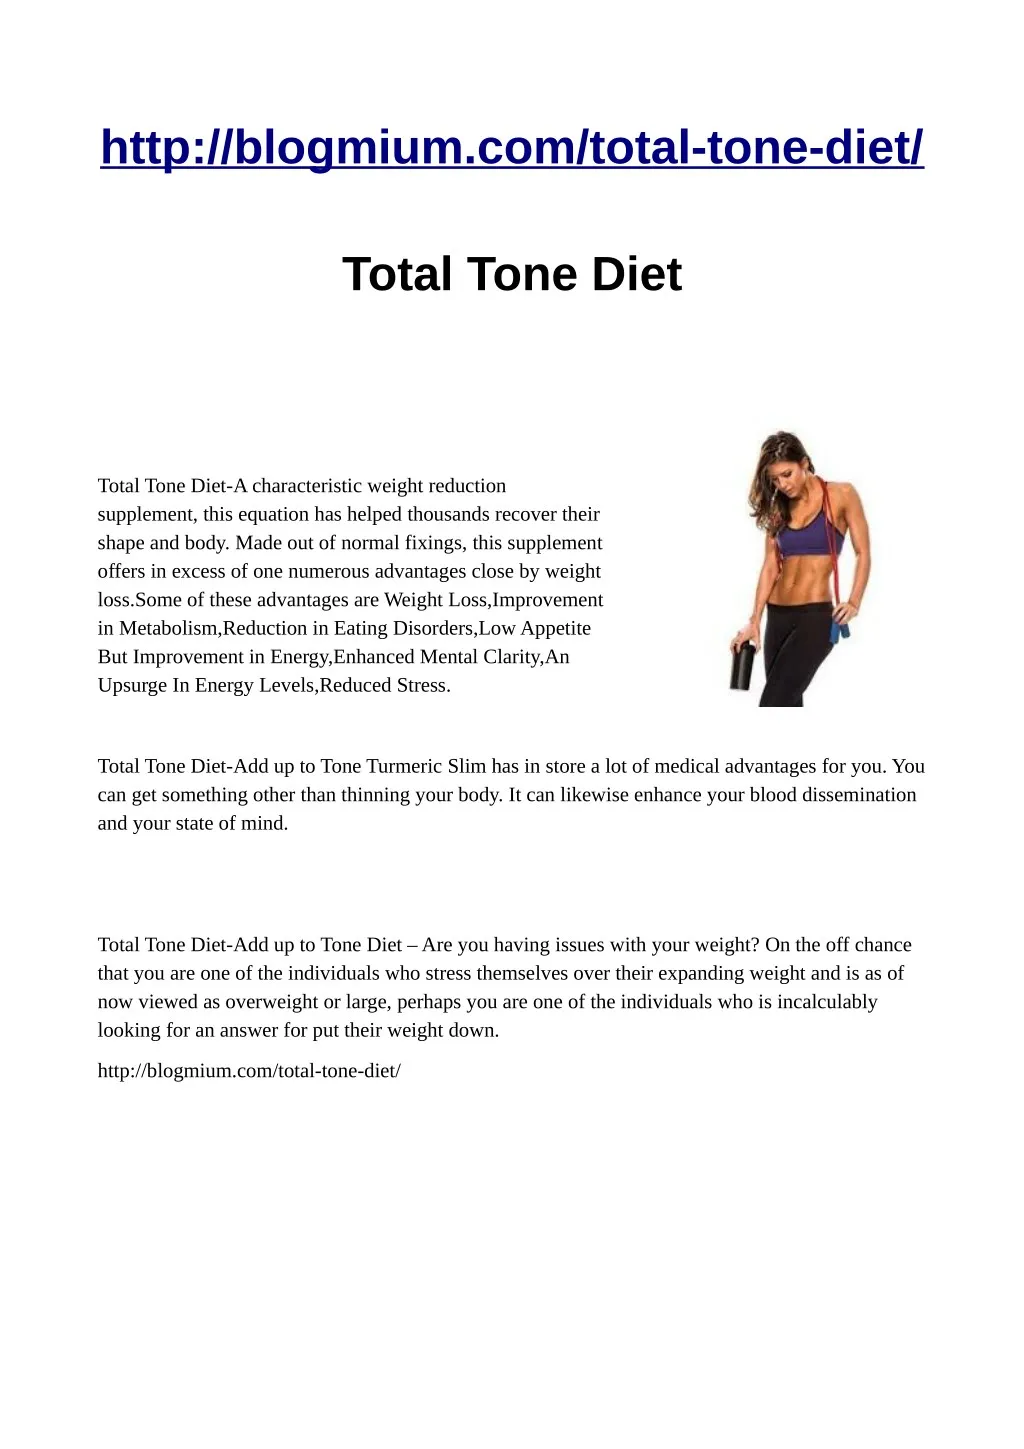 http blogmium com total tone diet